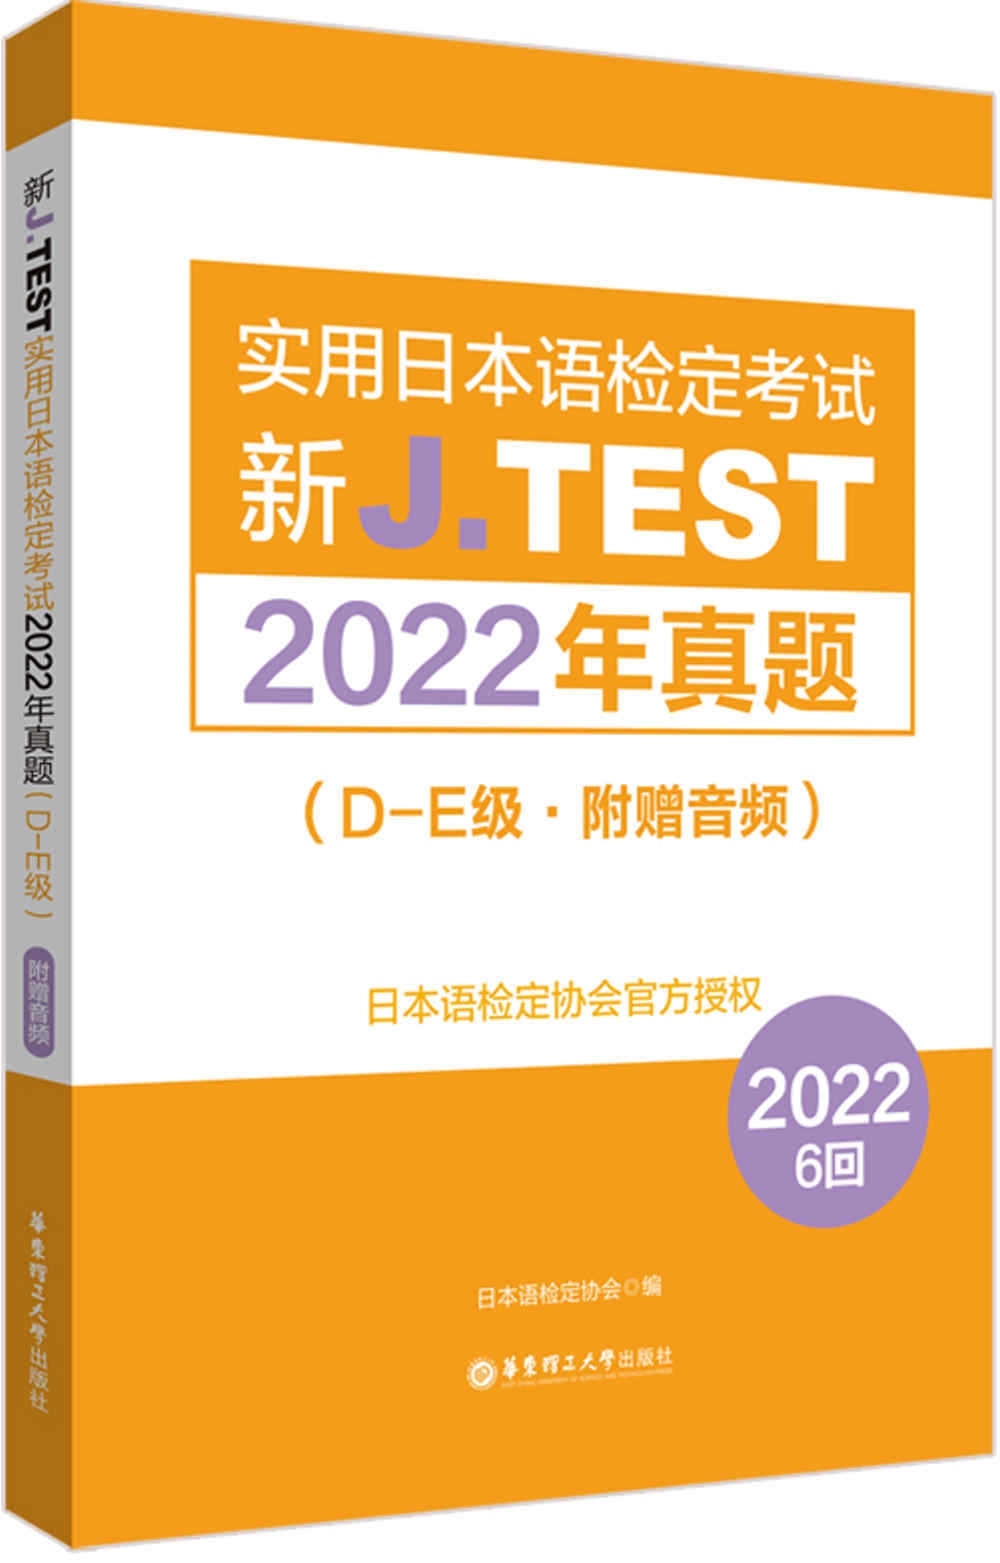 新J.TEST實用日本語檢定考試2022年真題（D-E級·附贈音頻）